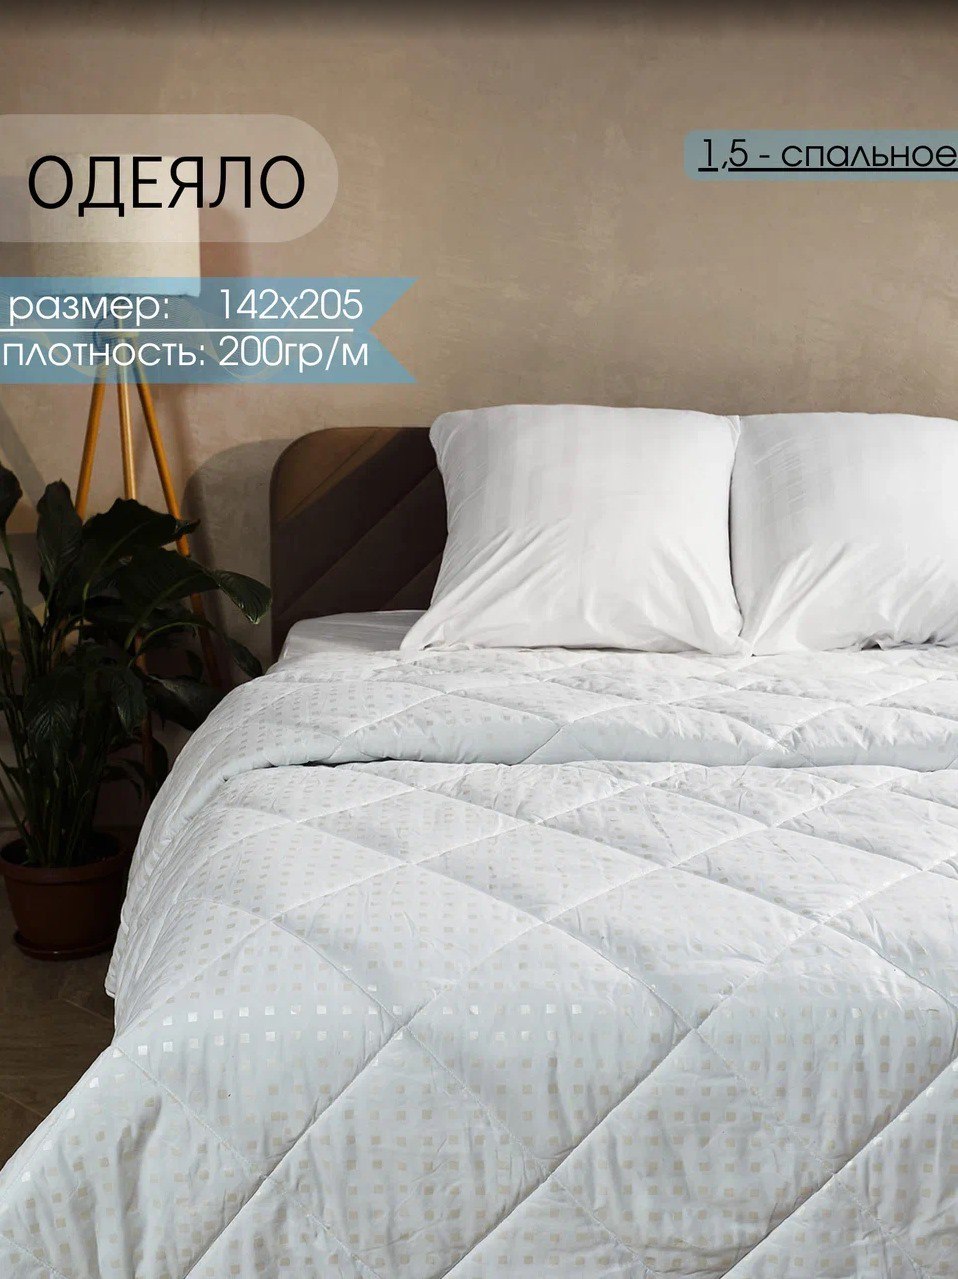 Одеяло Persona Home 1,5 спальное 142х205 см, поплекс